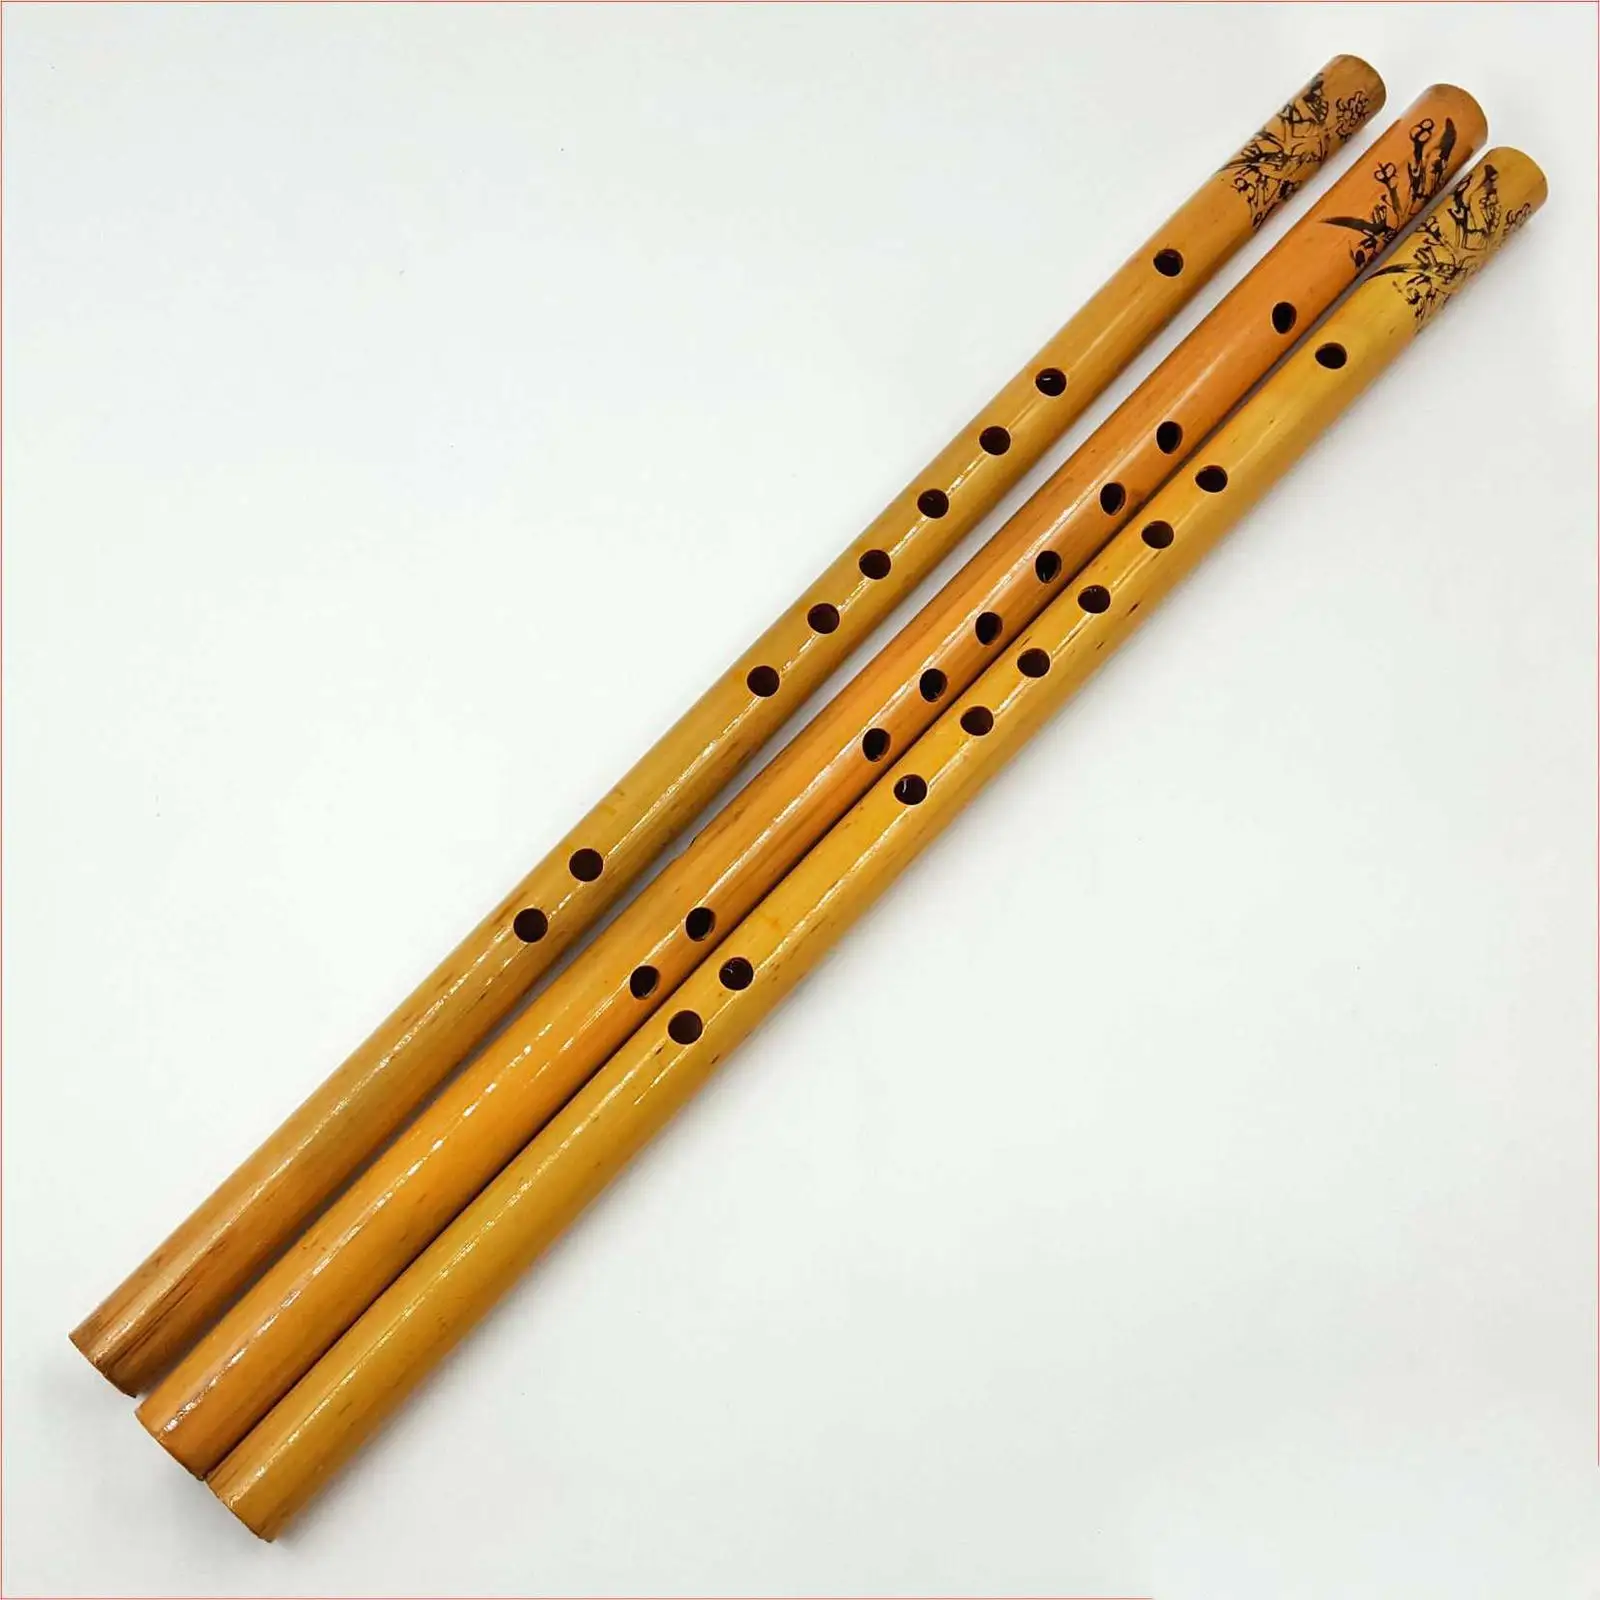 

Флейта Вертикальная Портативная ручной работы для детей и начинающих длиной 44 см винтажная бамбуковая флейта деревянные инструменты музыкальный инструмент